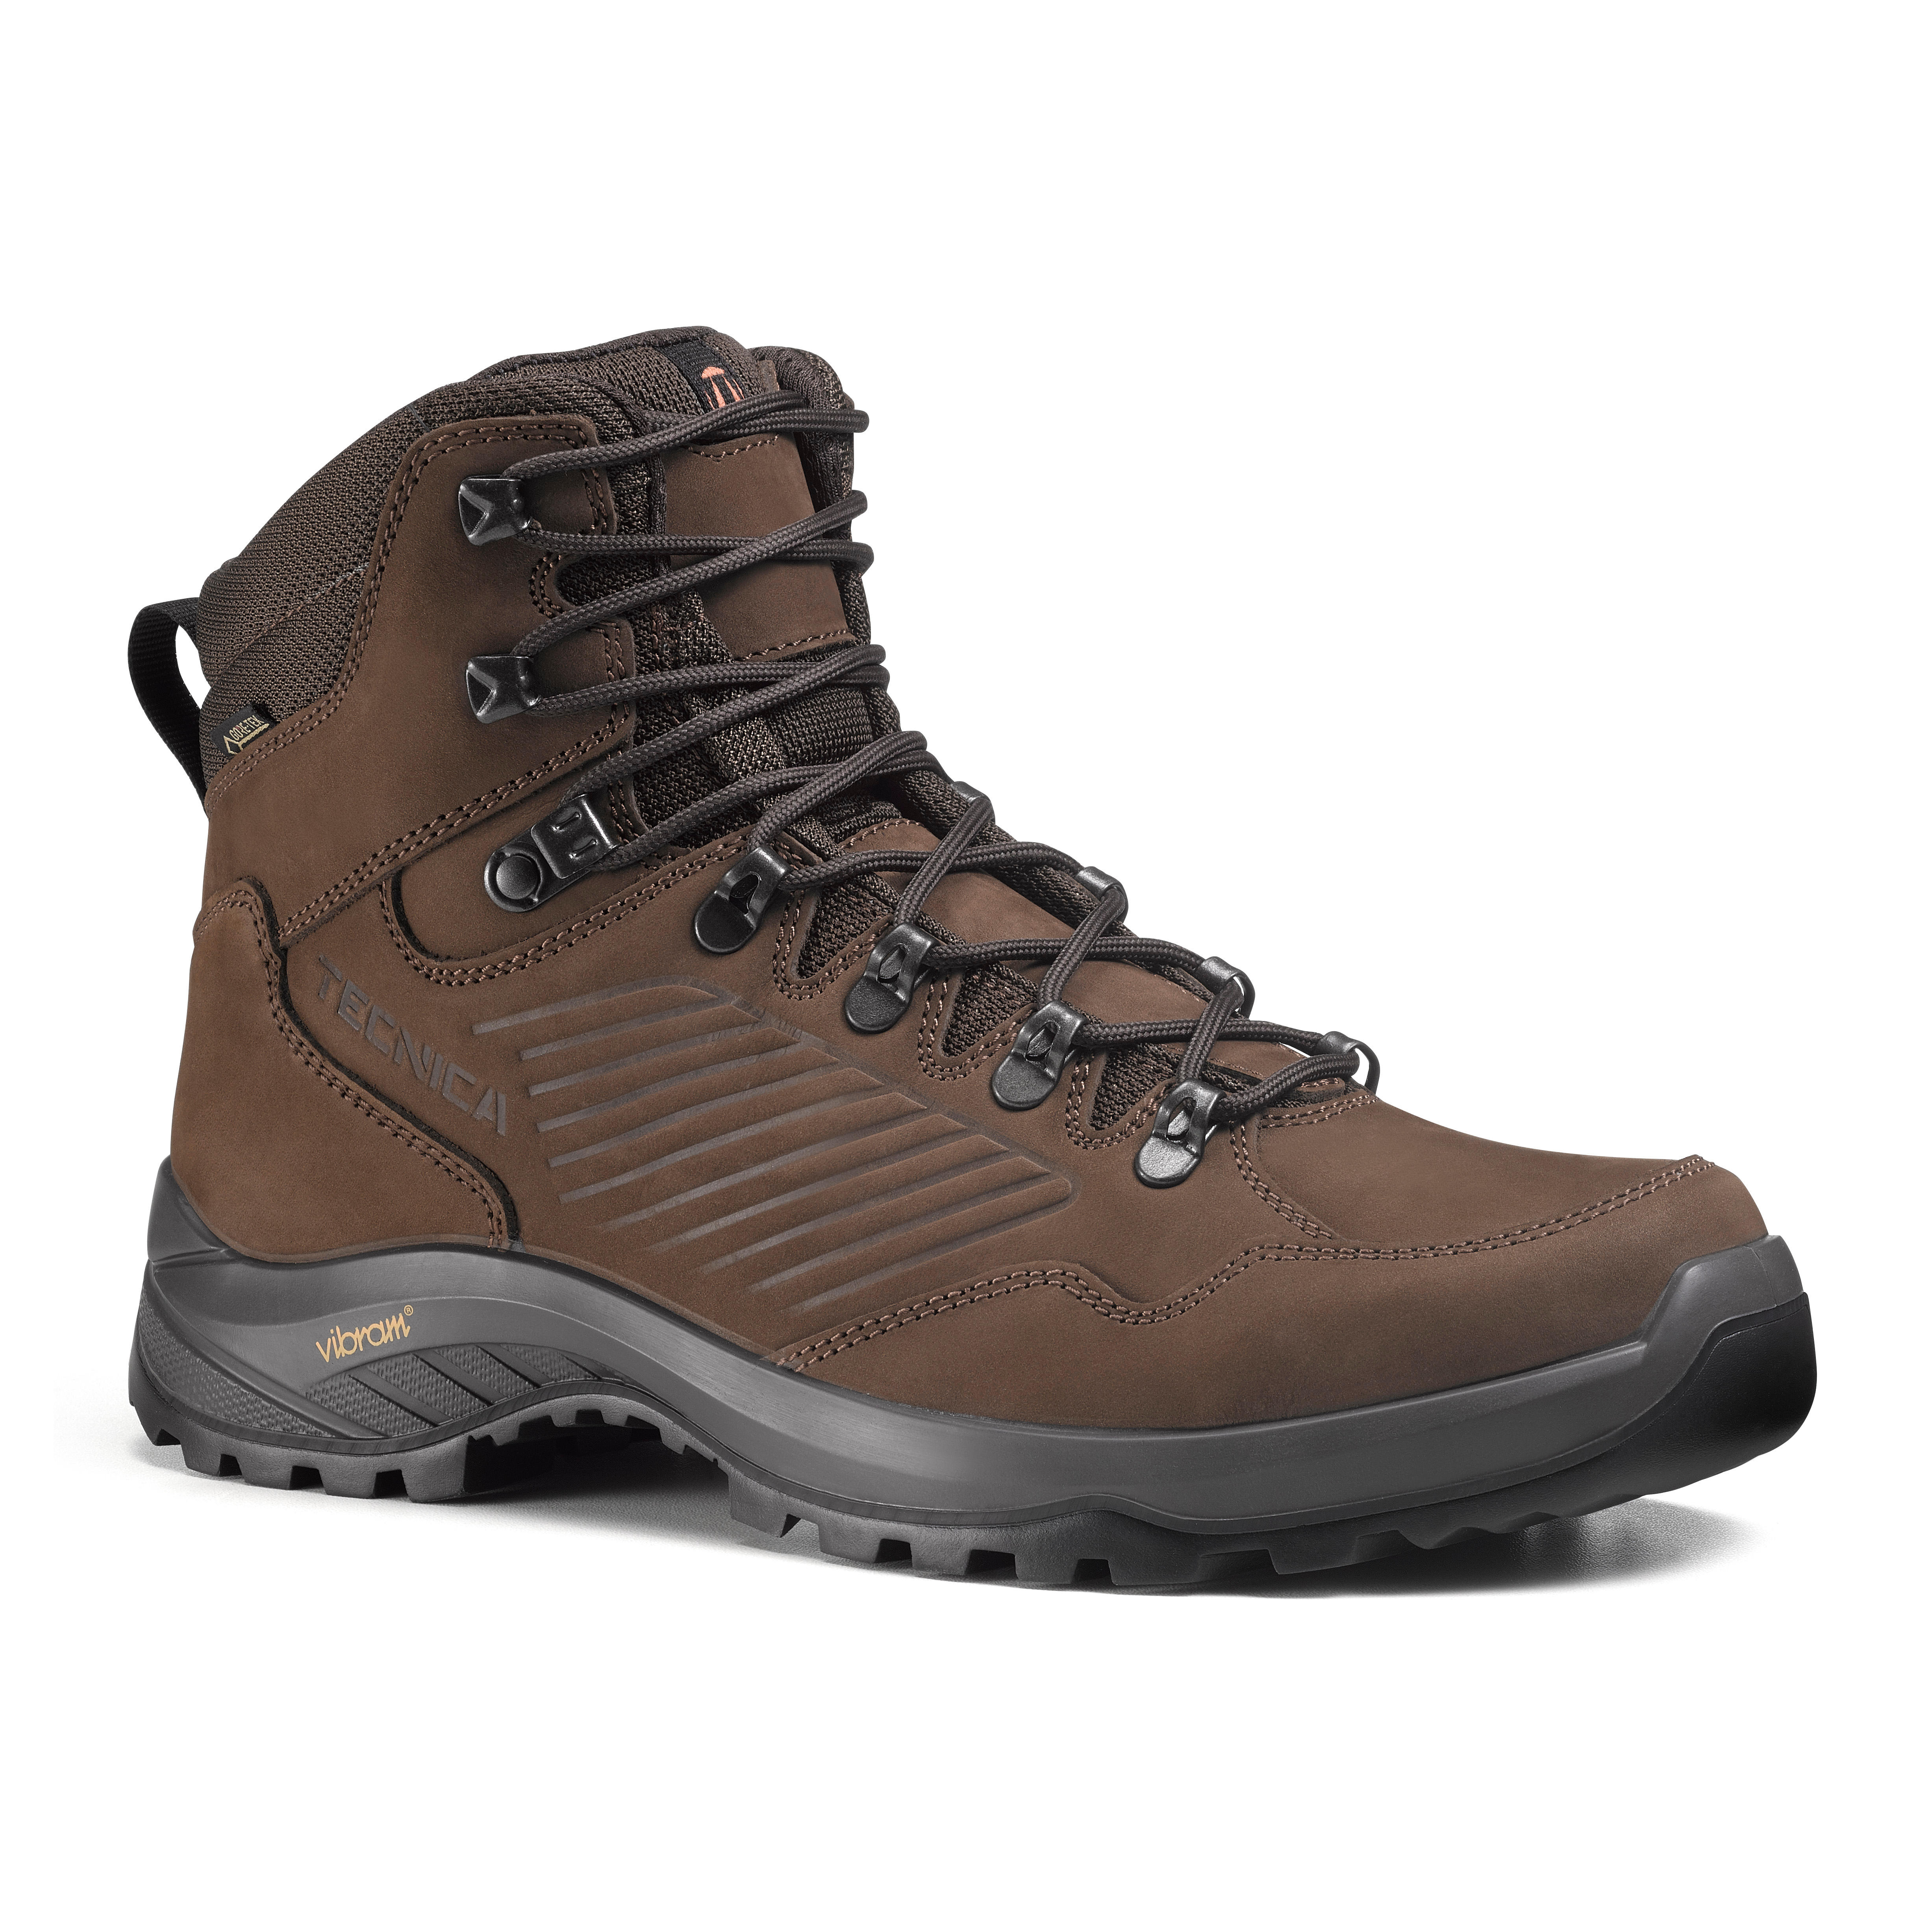 Men's Waterproof Hiking Boots - Technica Torena Gore-tex